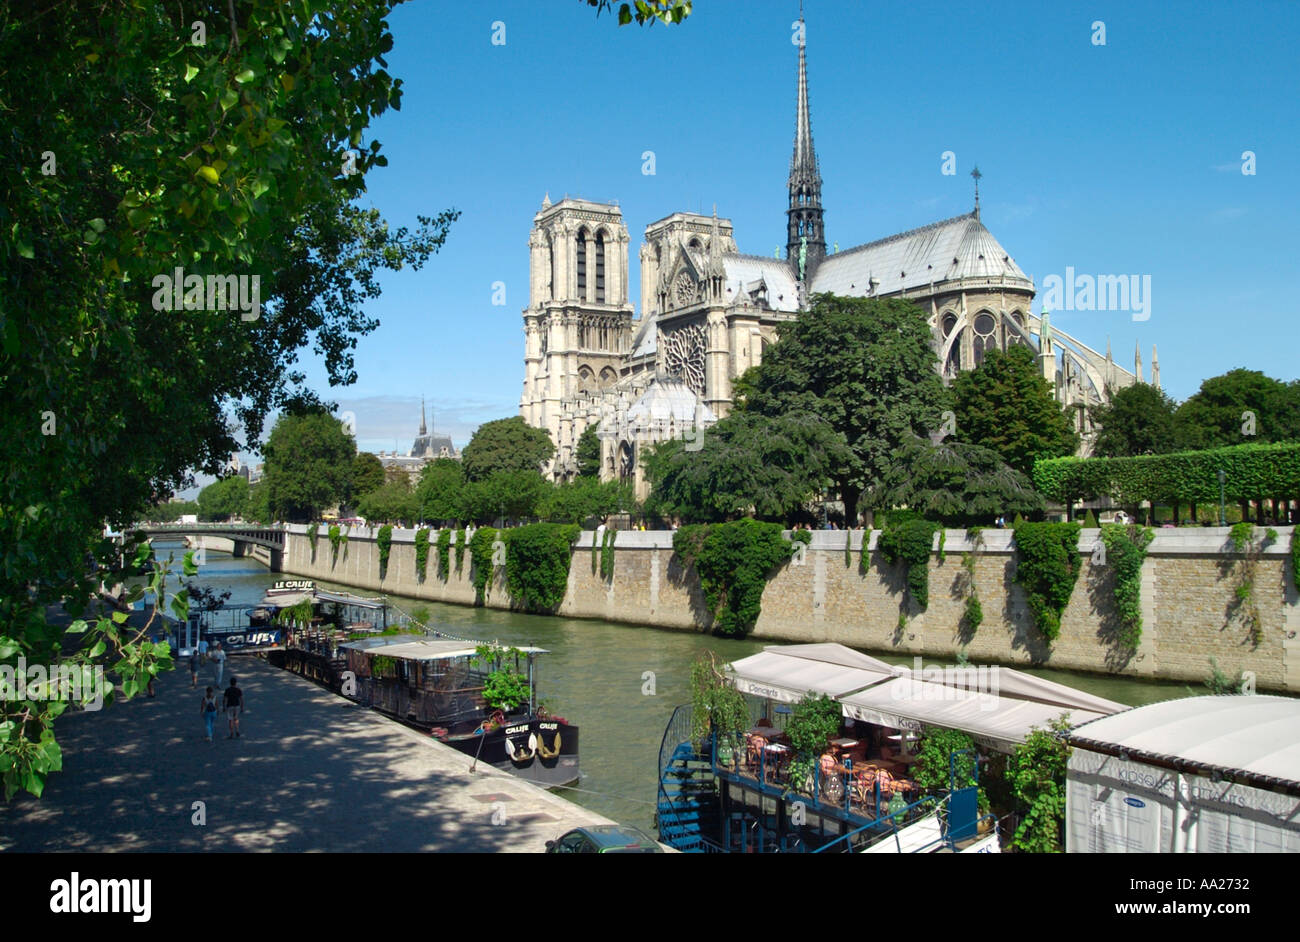 La cathédrale Notre-Dame et la Seine, l'Île de la Cité, Paris, France Banque D'Images